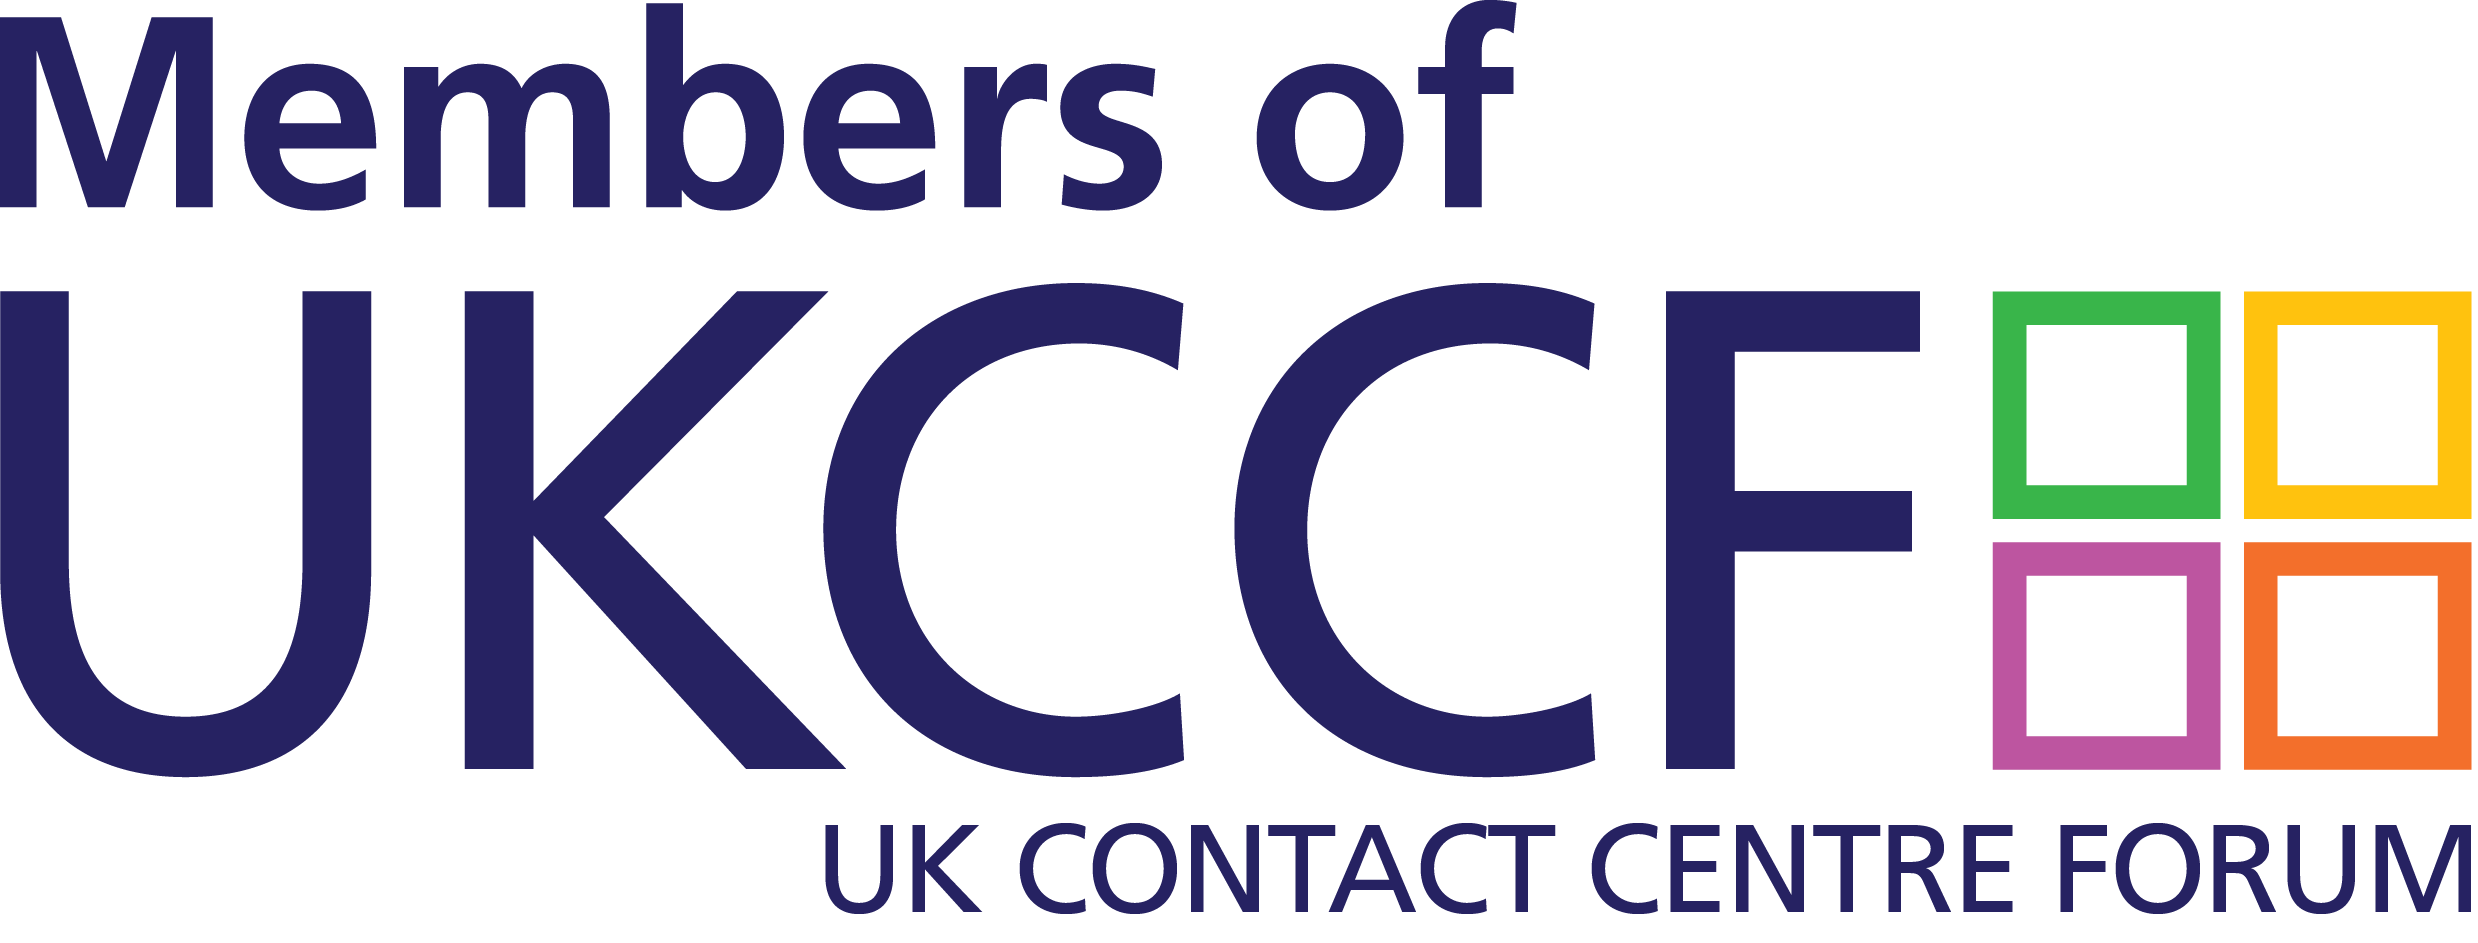 UKCCF logo